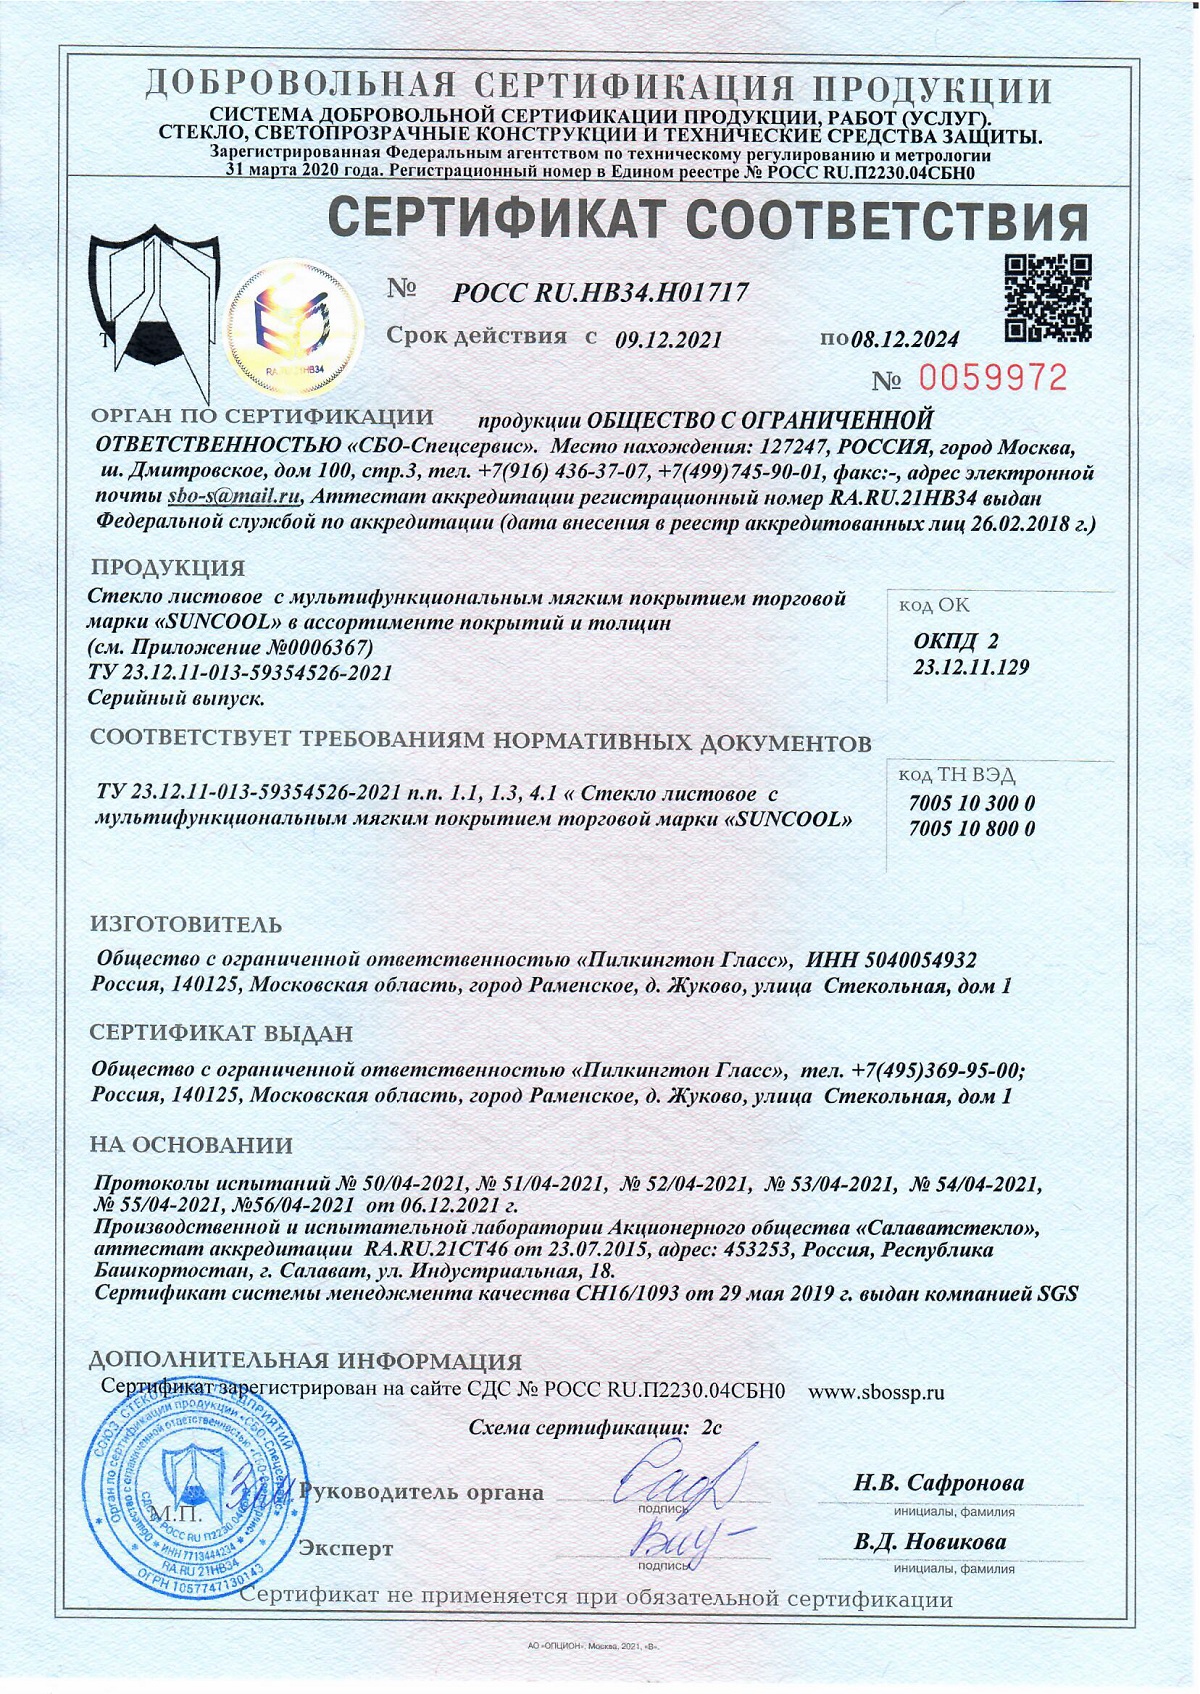 Сертификат соответствия Suncool 7040 Pro T, Suncool 6633 Pro T, Suncool 5025 Pro T, линейка Suncool-R, страница 1, 08.12.2024